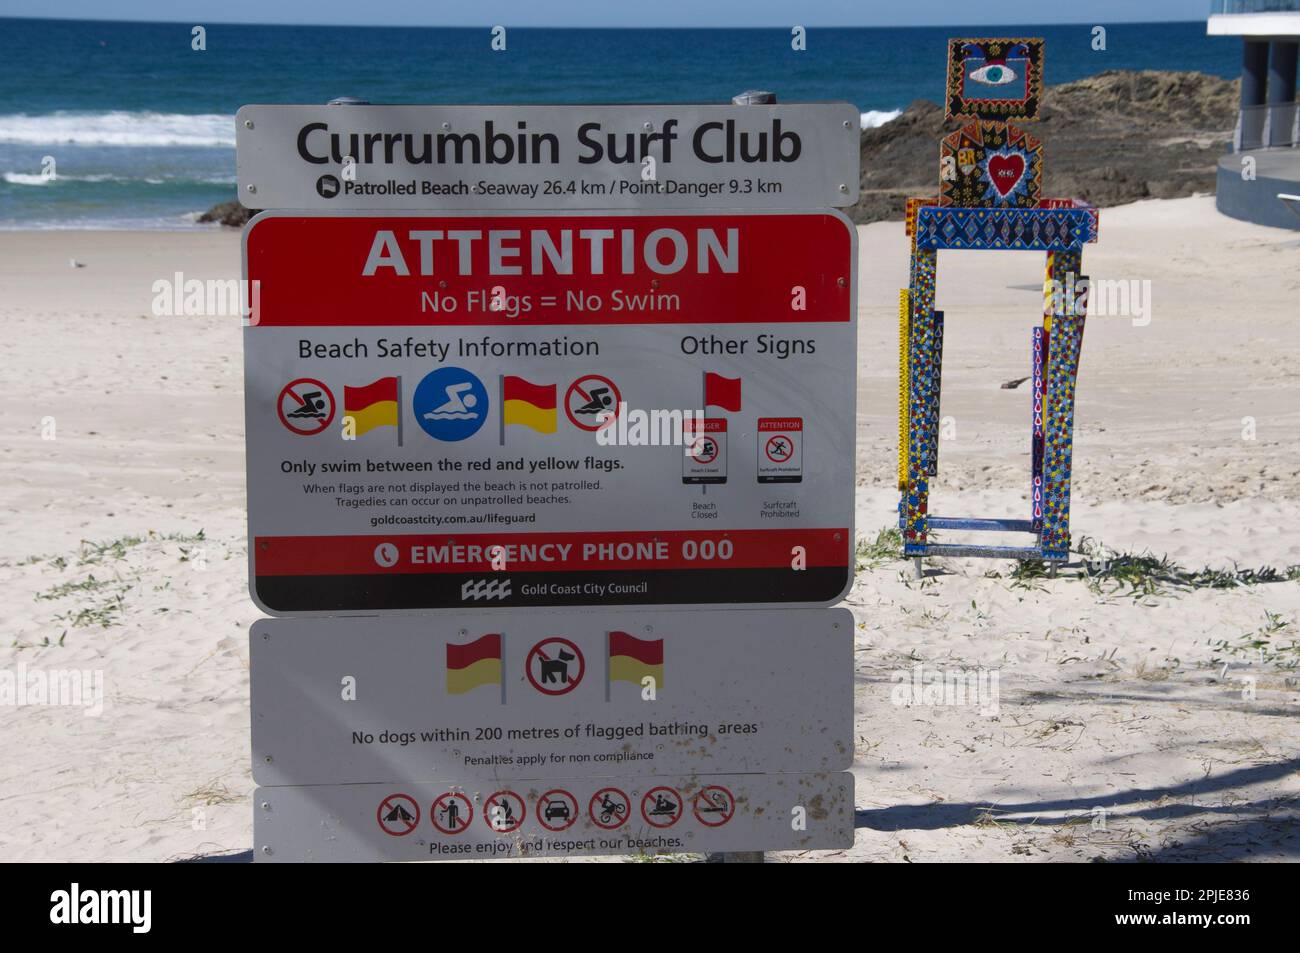 Panneau de sécurité Currumbin Surf Club sur la plage de sable, Gold Coast, Australie. Œuvres d'art, faisant partie du festival de sculpture de Swell 2013. Horizon de l'océan Pacifique. Banque D'Images